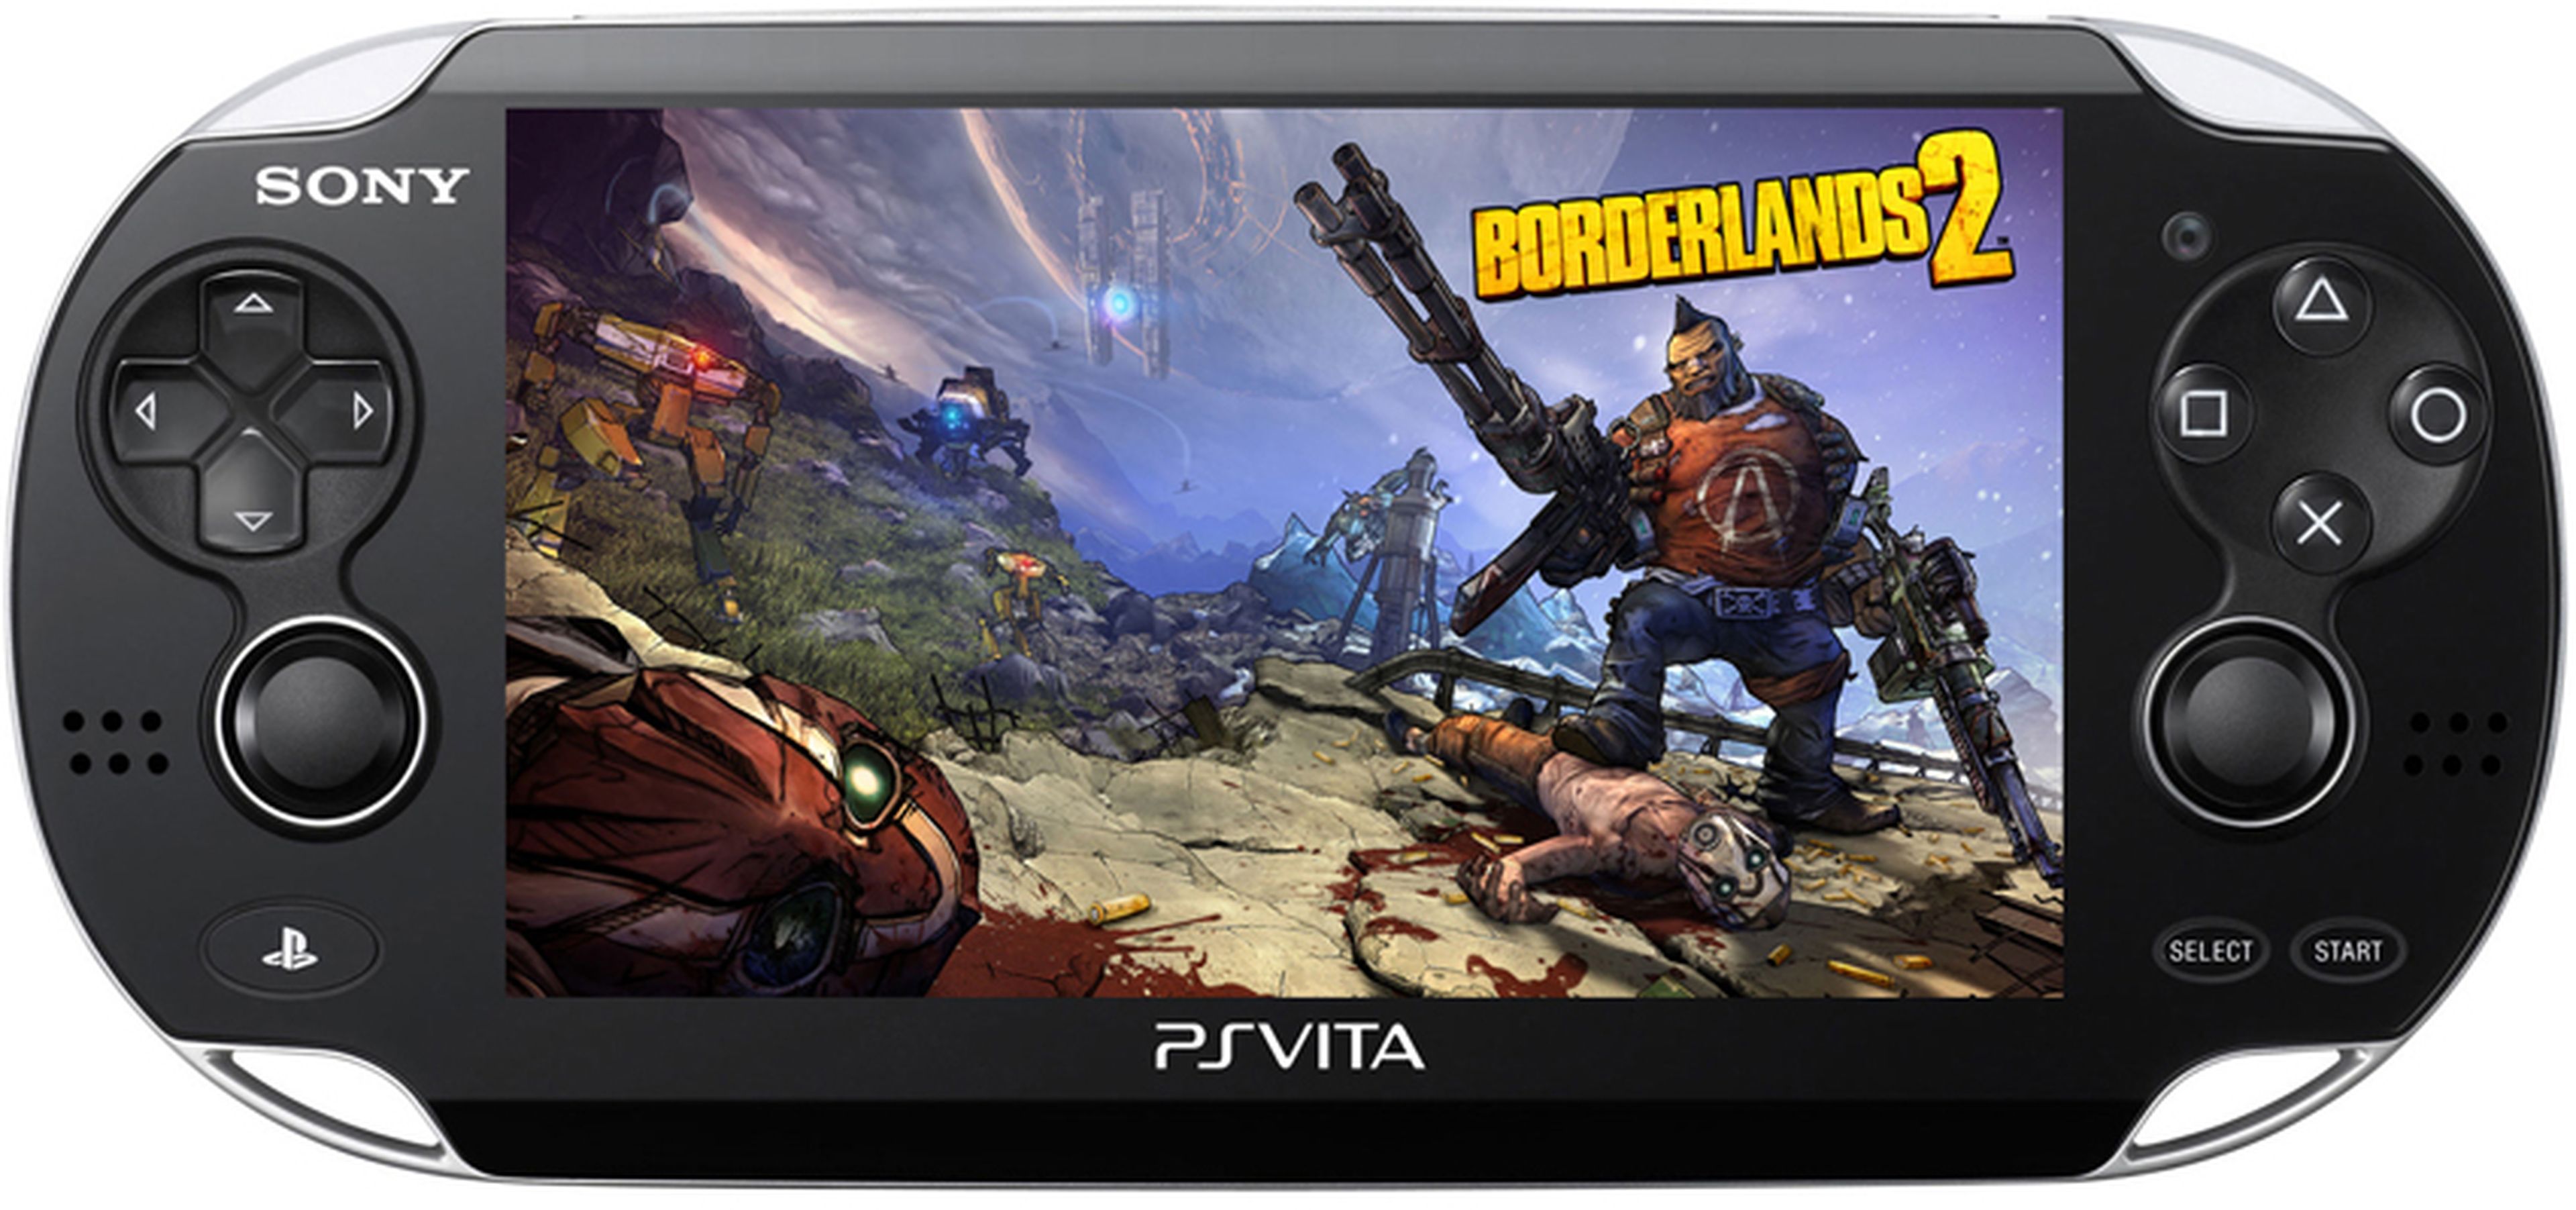 Gamescom 2013: Borderlands 2 llegará a PS Vita